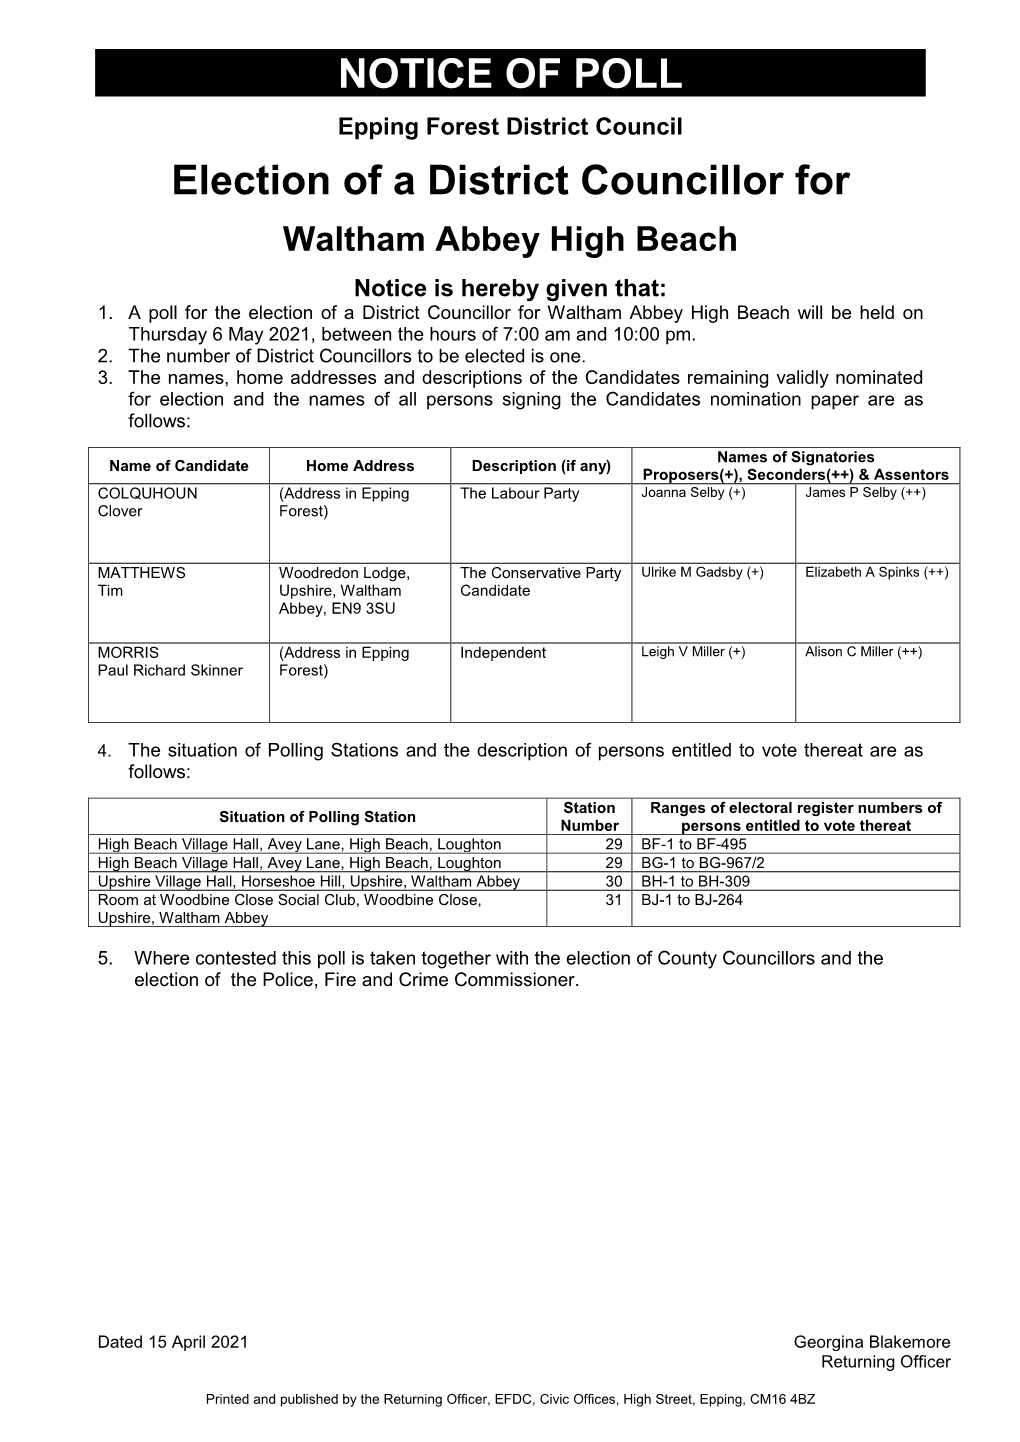 Waltham Abbey High Beach – Notice of Poll